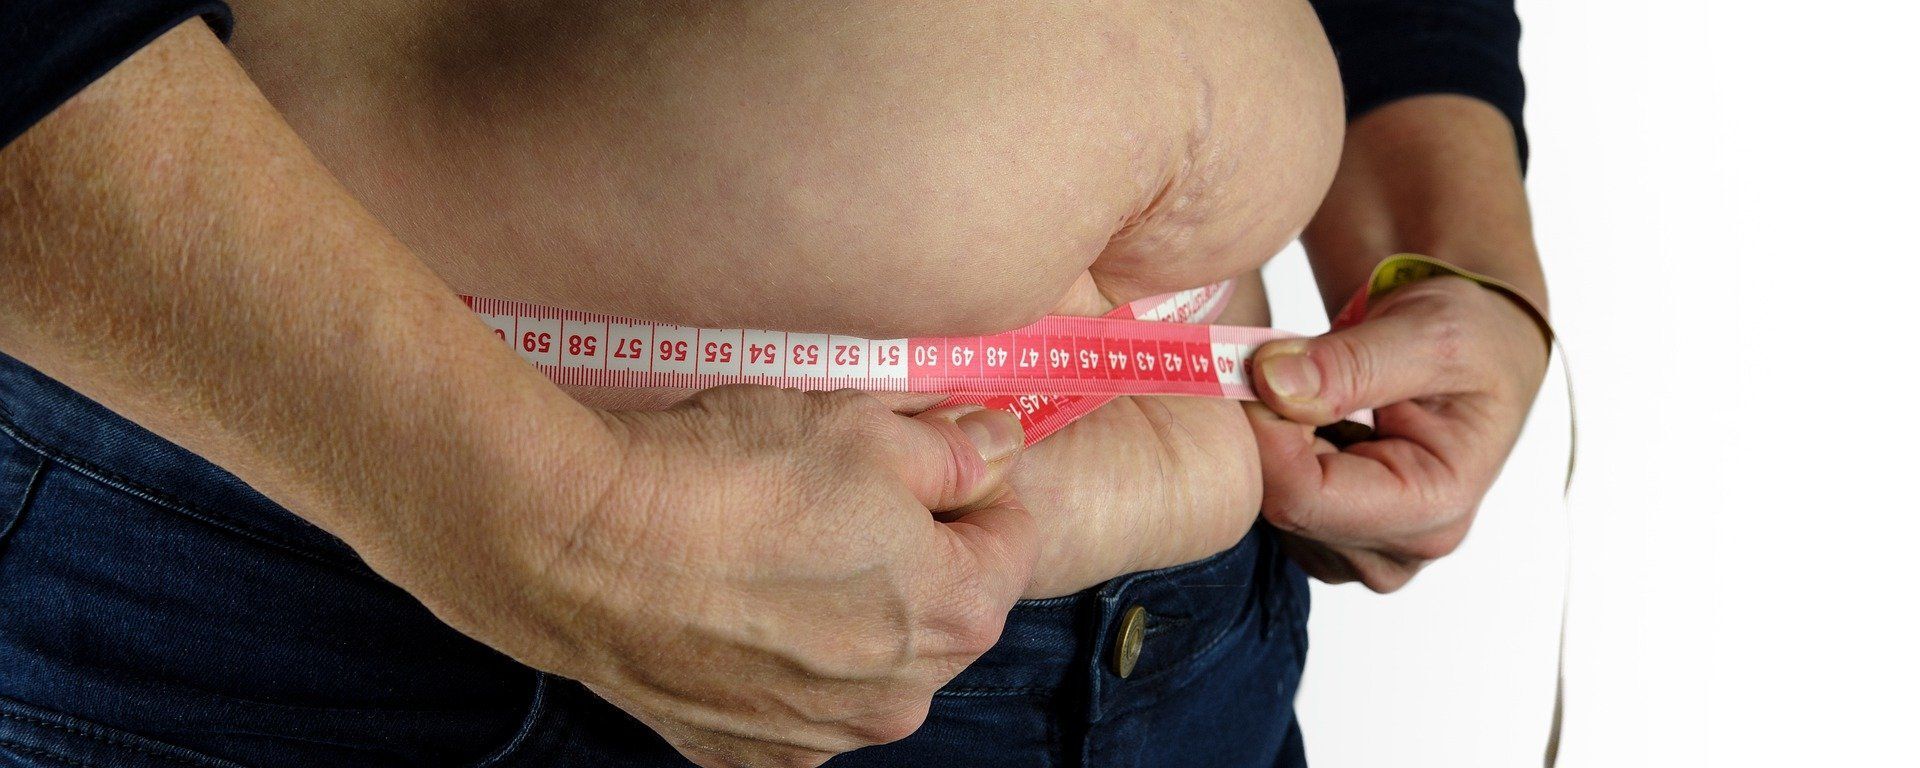 Una persona se mide la barriga con una cinta métrica - Sputnik Mundo, 1920, 28.02.2021